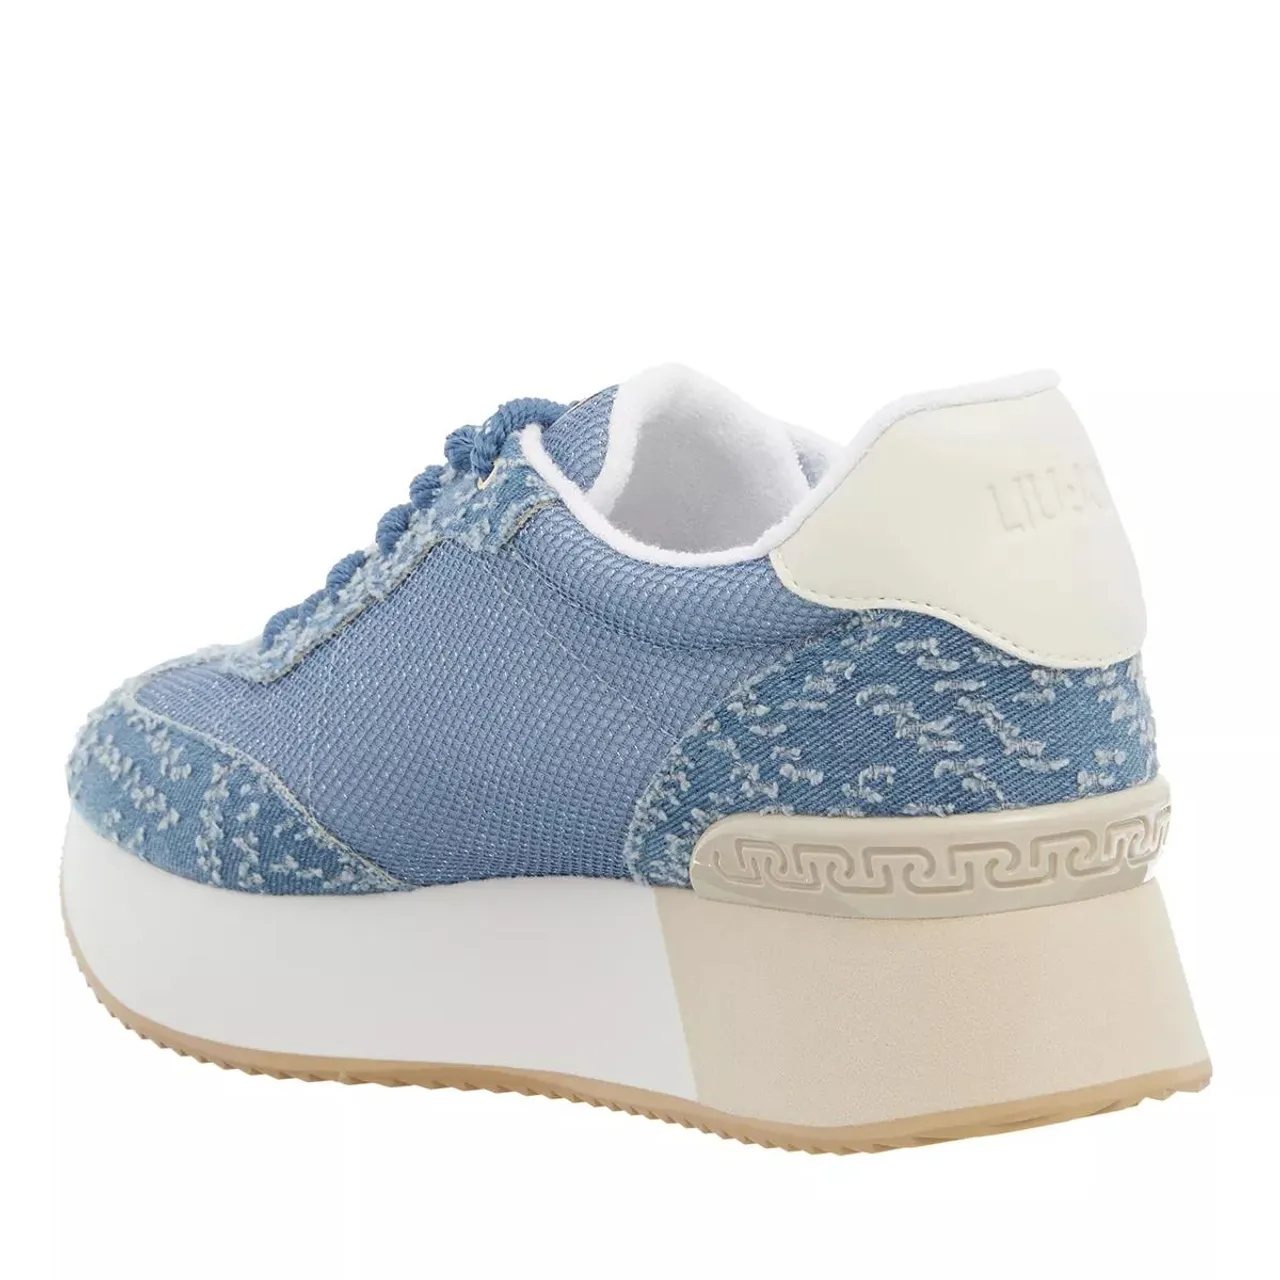 LIU JO Sneakers - Dreamy Sneakers - blue - Sneakers for ladies